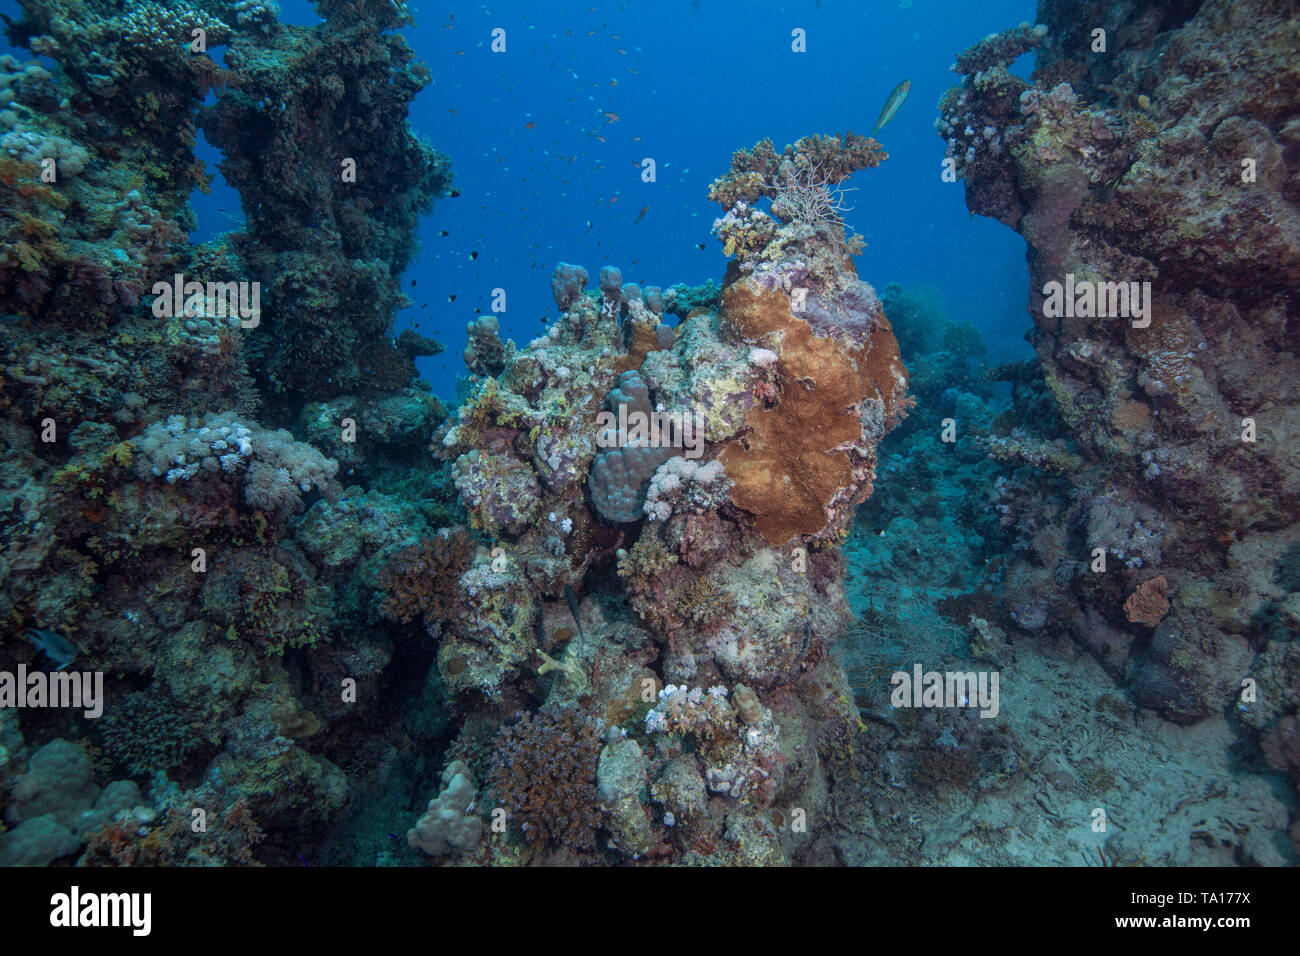 Peu de restes de vie restent sur la mort des récifs coralliens de la Mer Rouge. Le sud de l'Egypte. Banque D'Images